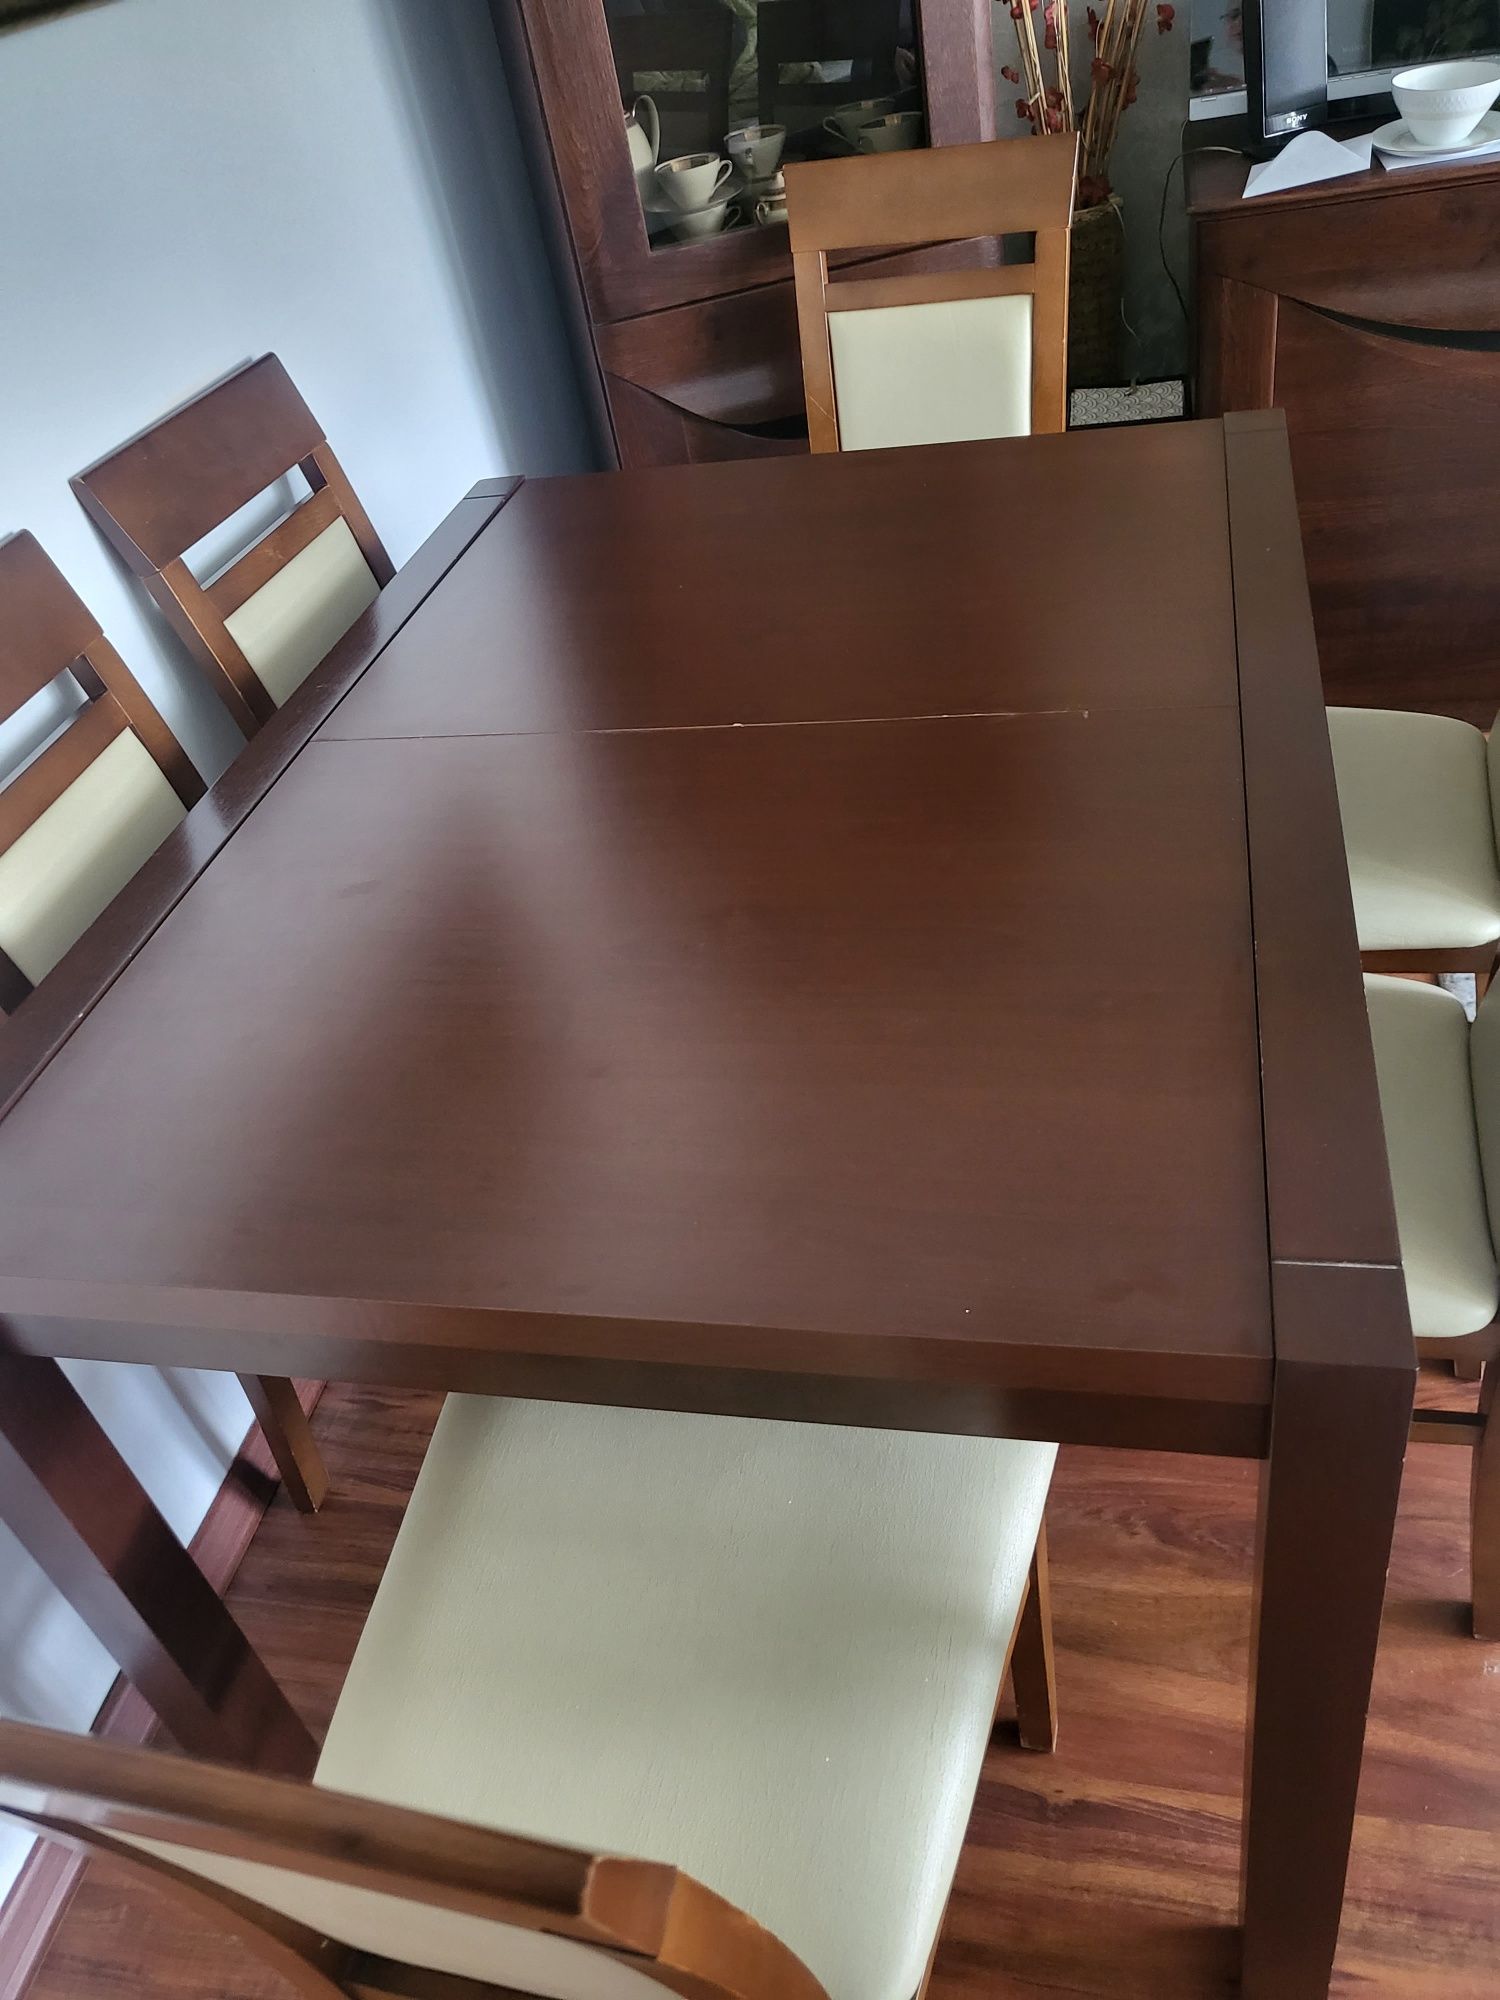 Zestaw Stół +6 krzeseł